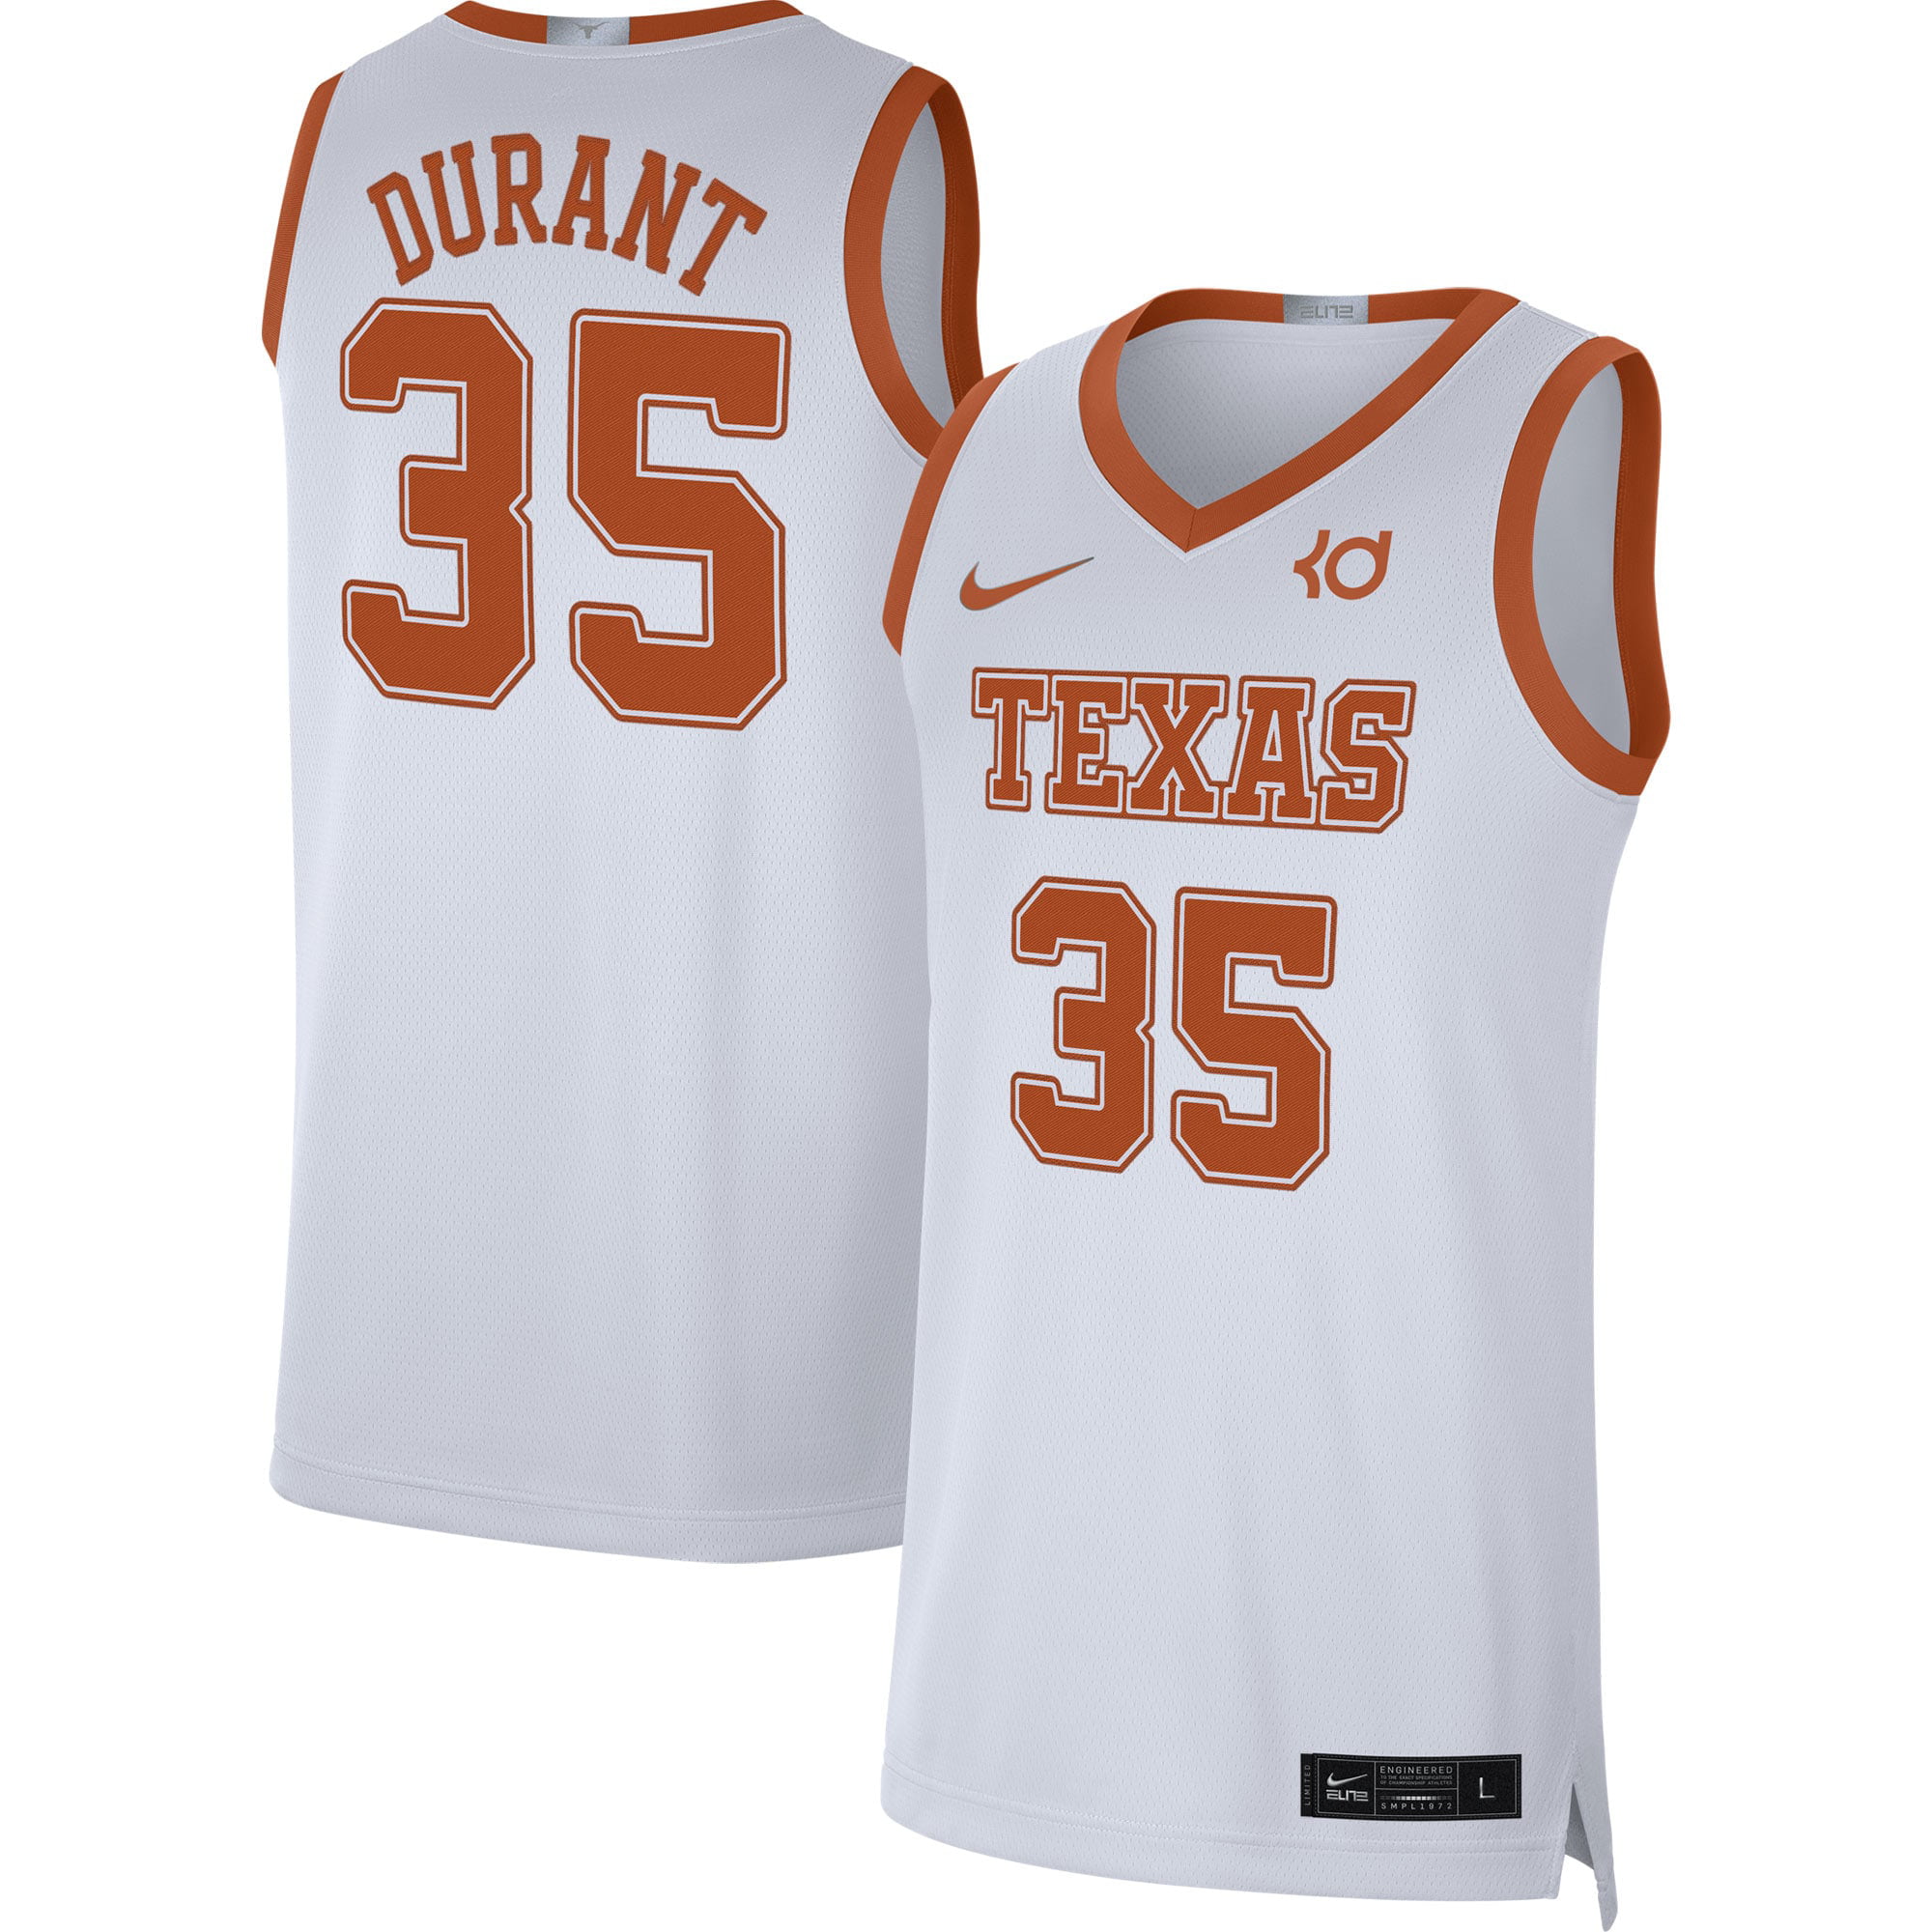 î€€Kevinî€ î€€Durantî€ Texas Longhorns Nike Alumni Player Limited Basketball î€€Jerseyî€ - White - Walmart.com